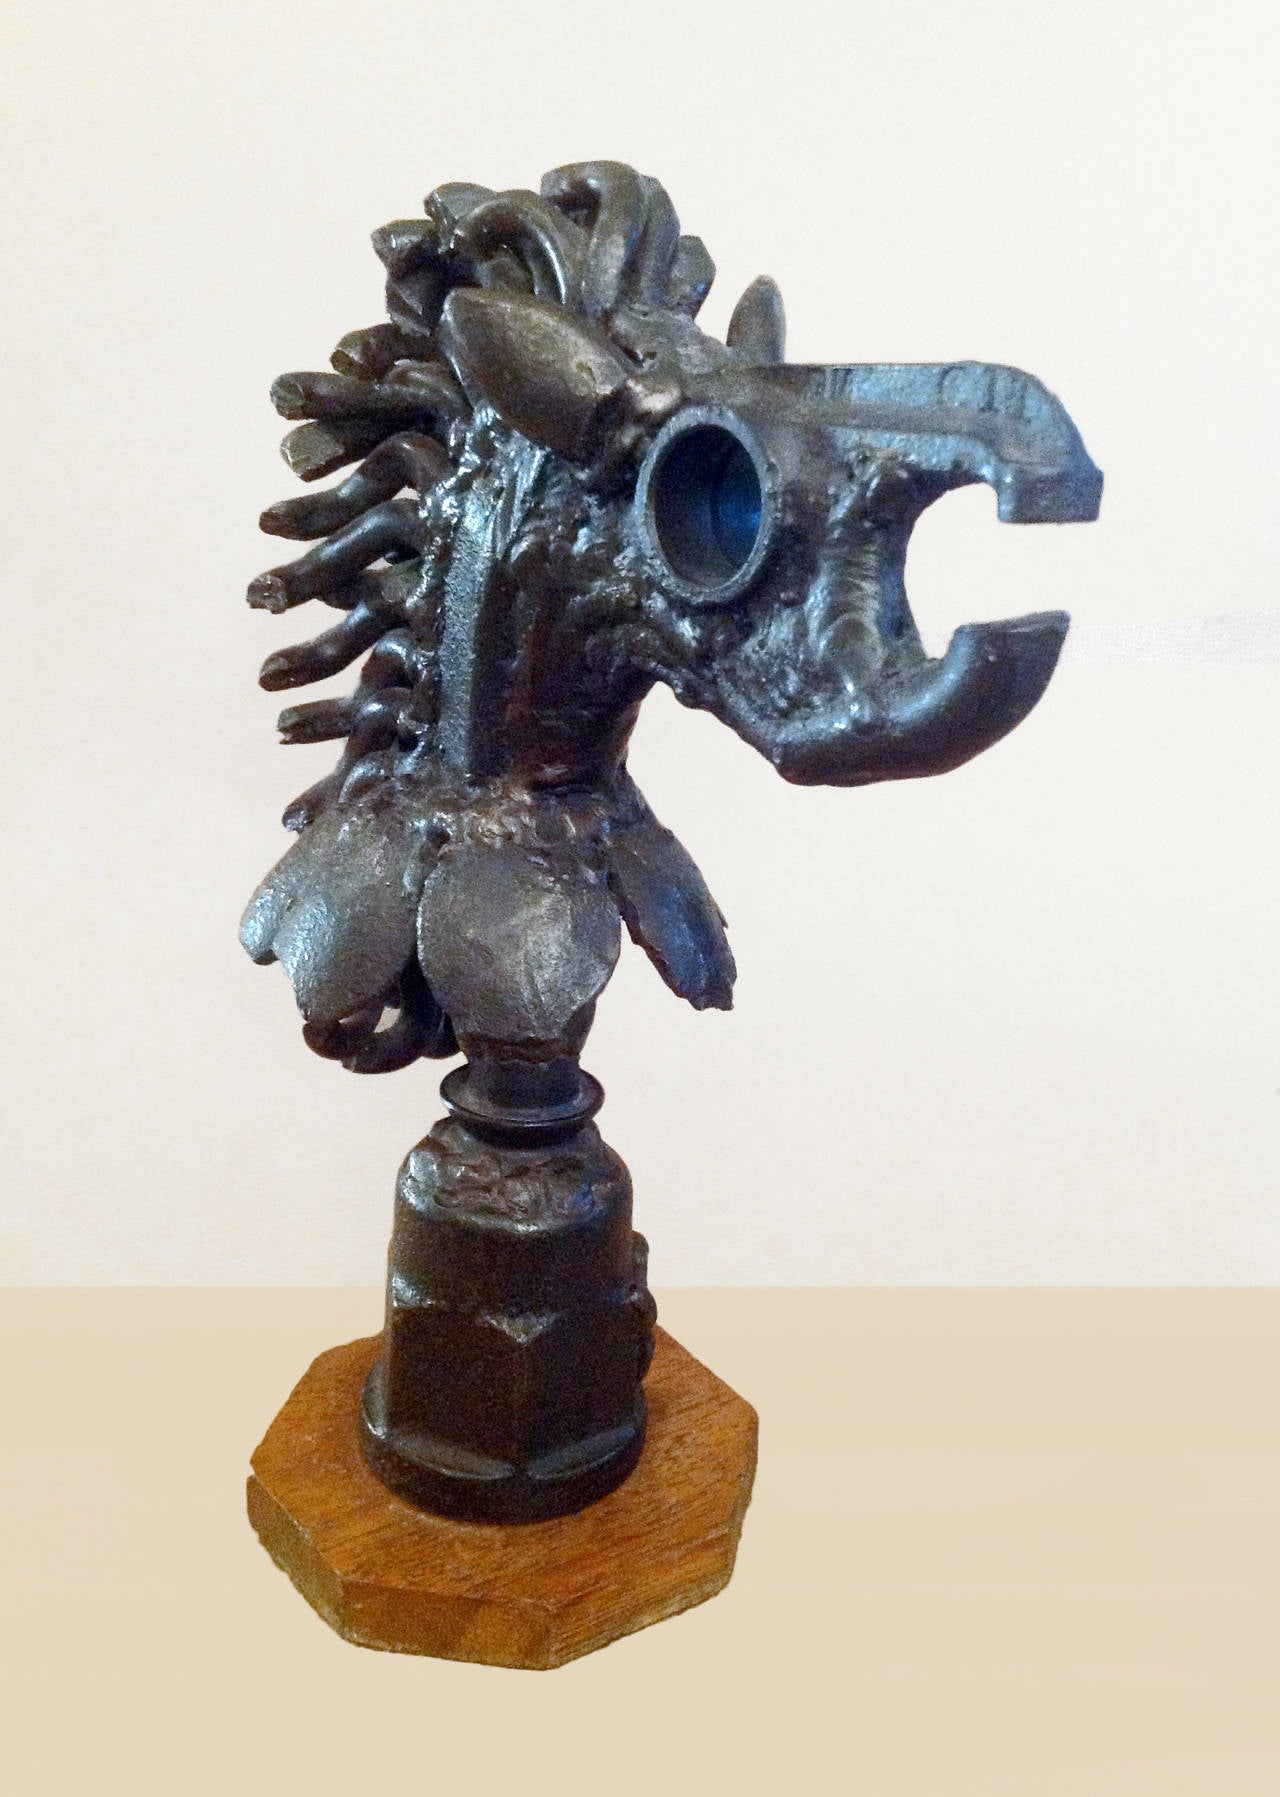 Cabeza de Caballo - Sculpture by Victor Delfin